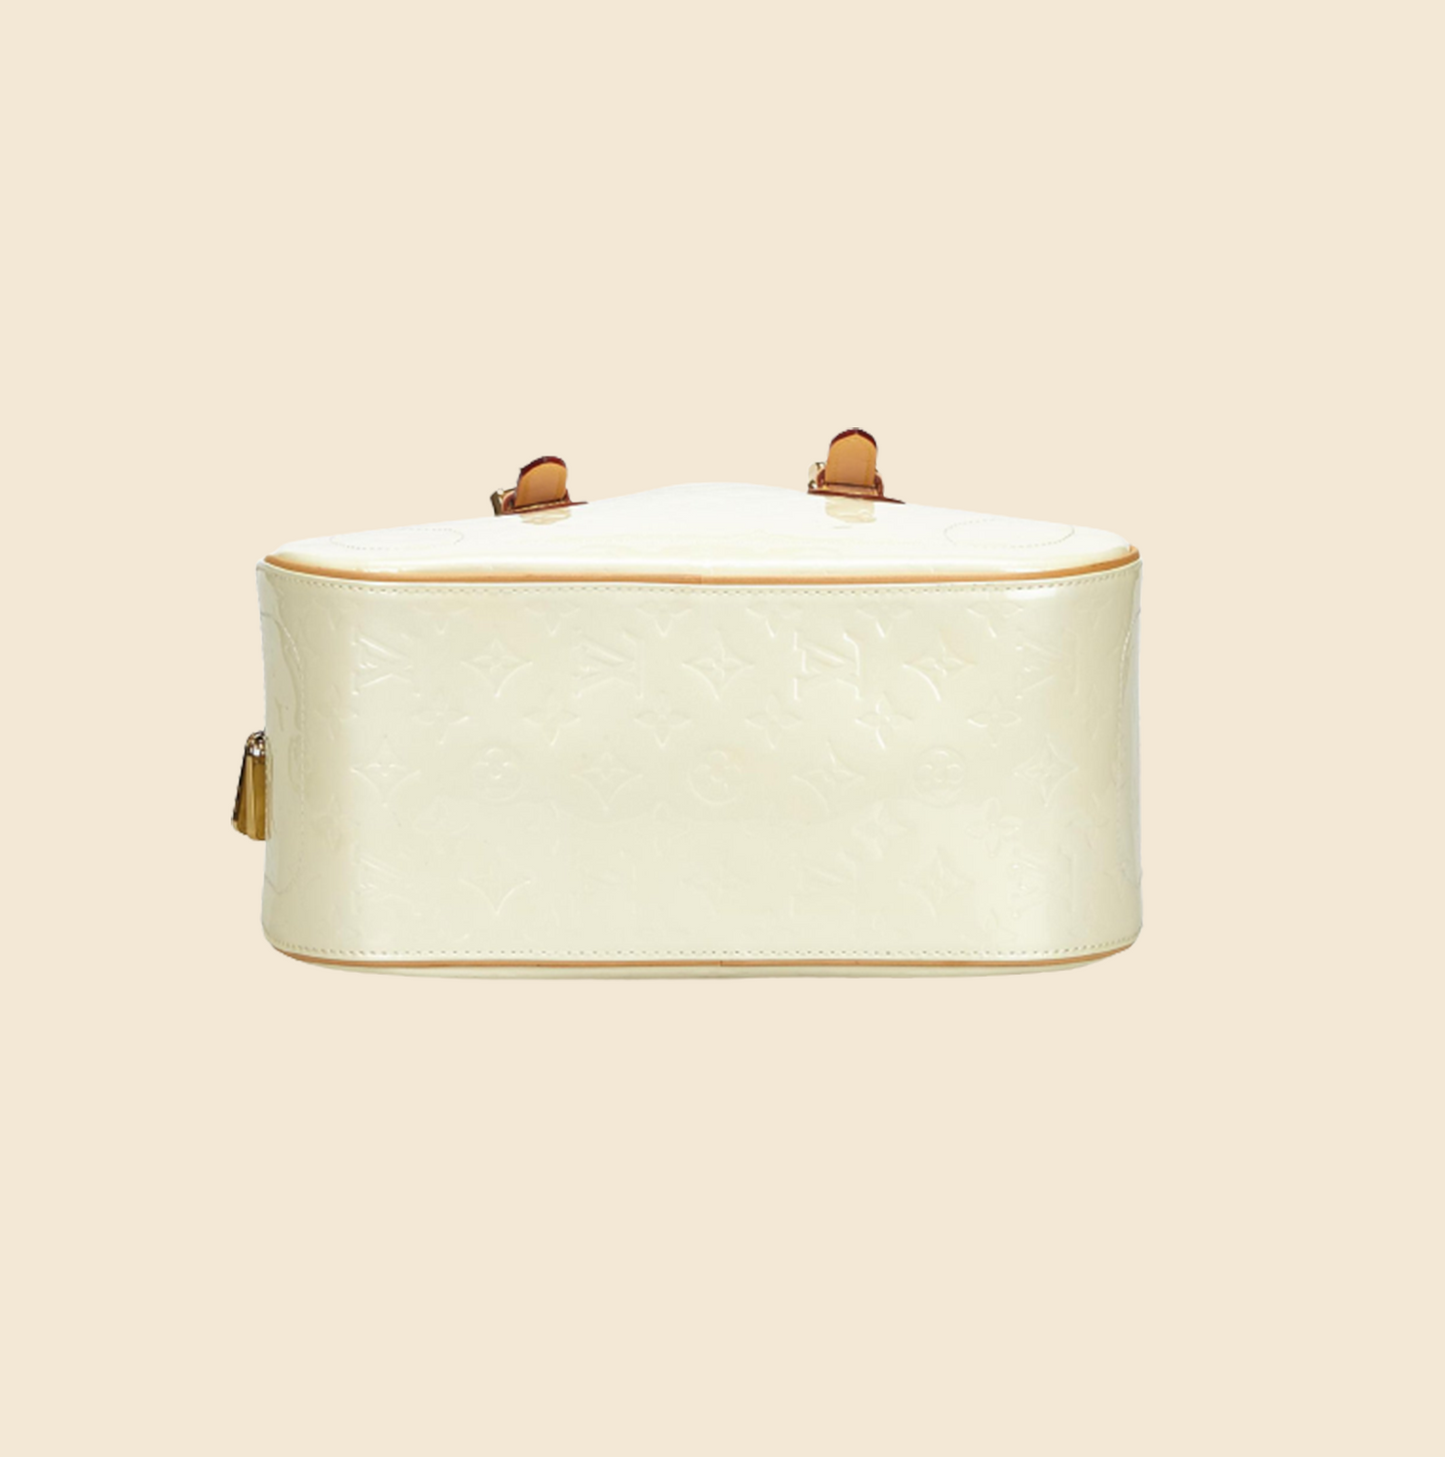 Louis Vuitton Cream Monogram Vernis Summit Drive Bag